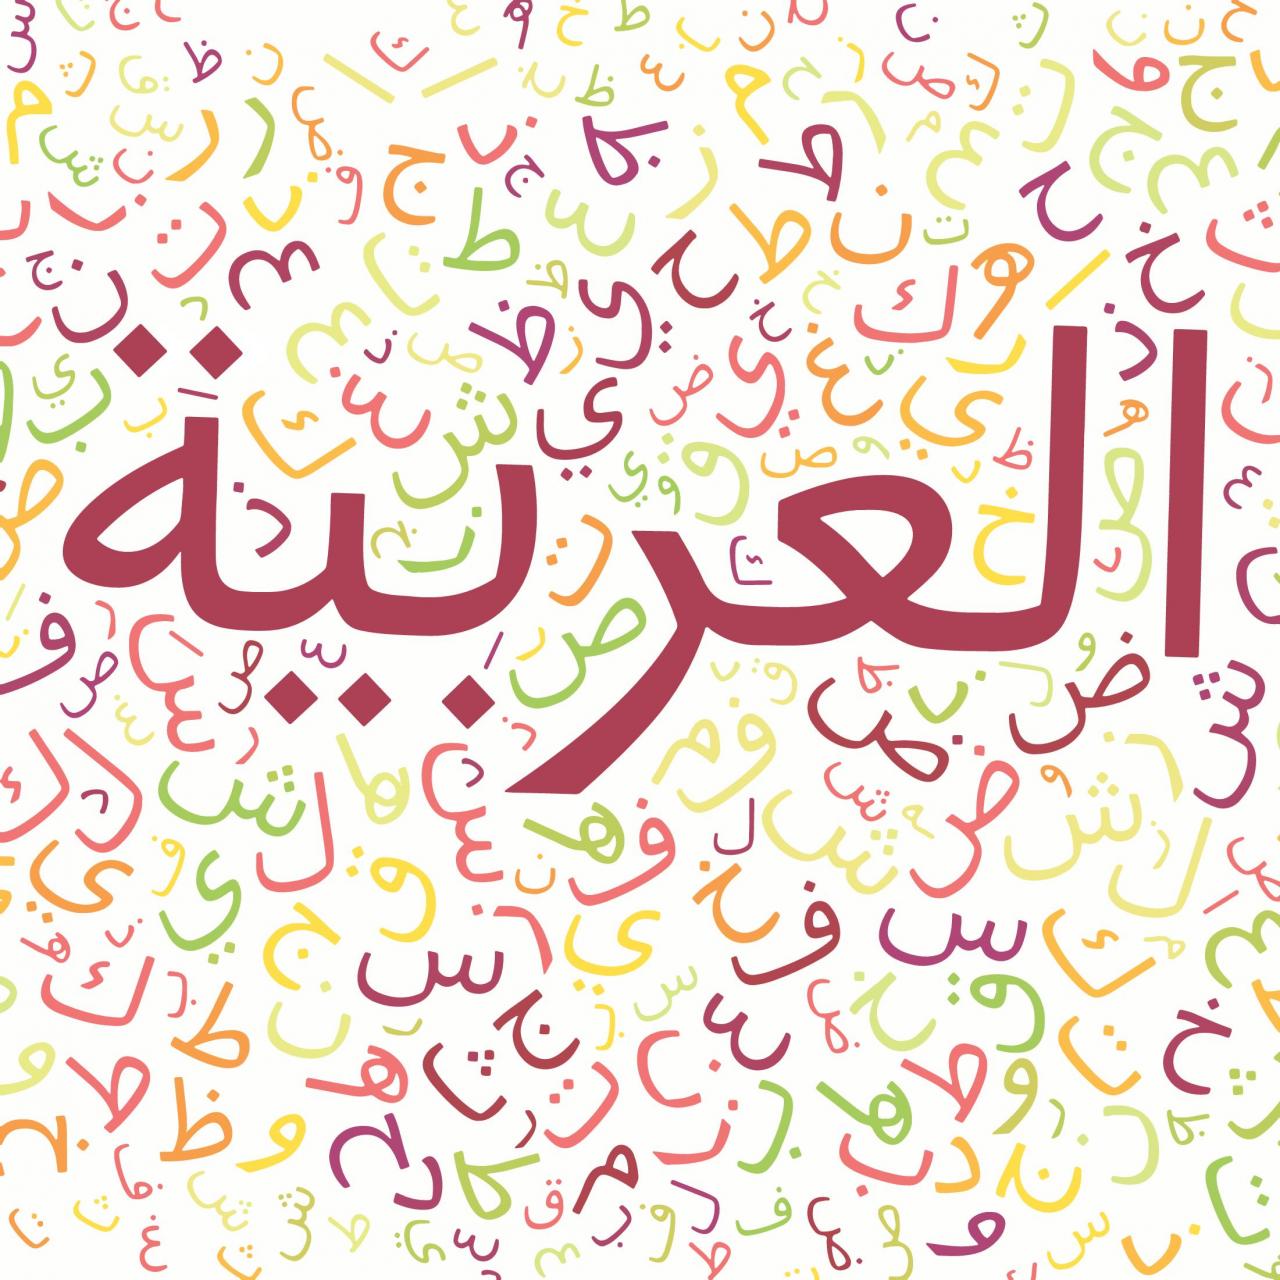 546 1 صور عن اللغة العربية - اجمل الكتابات بالصور للغة العربية لمياء